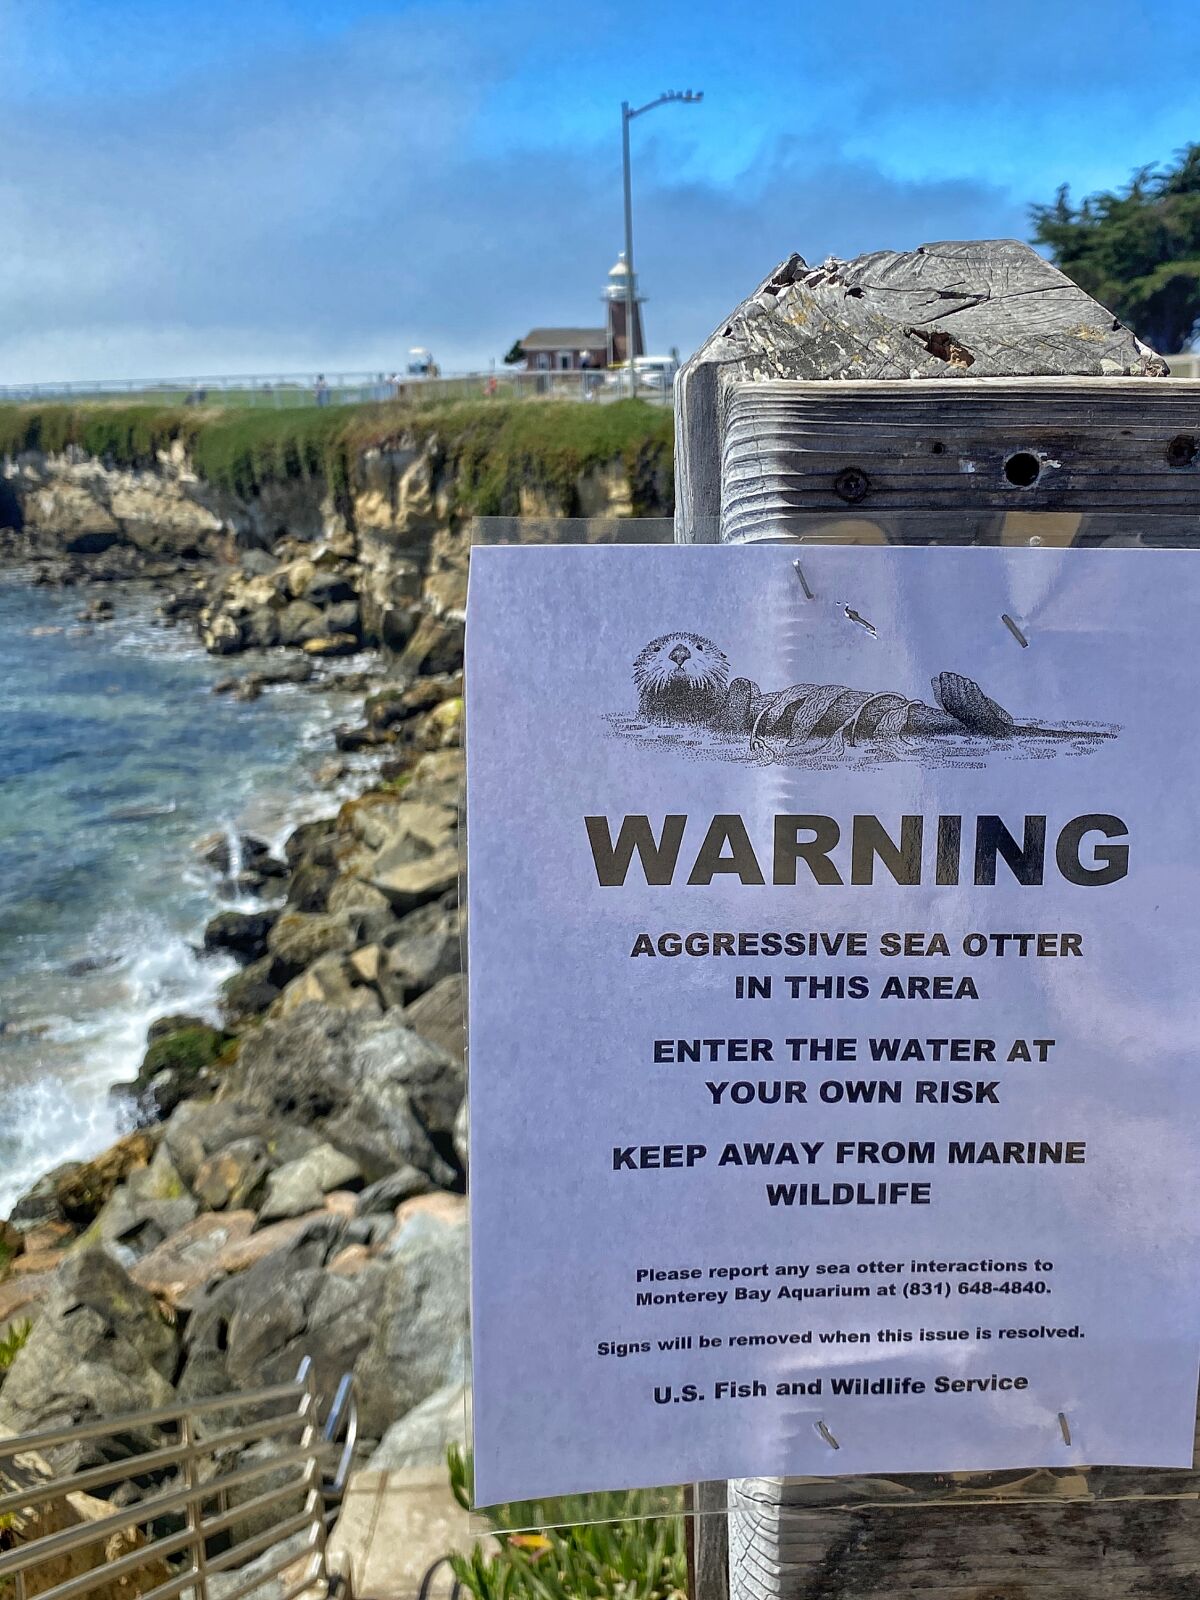 Ein Schild an einem Ufer warnt vor einem aggressiven Seeotter. "Betreten auf eigene Gefahr," es sagt.